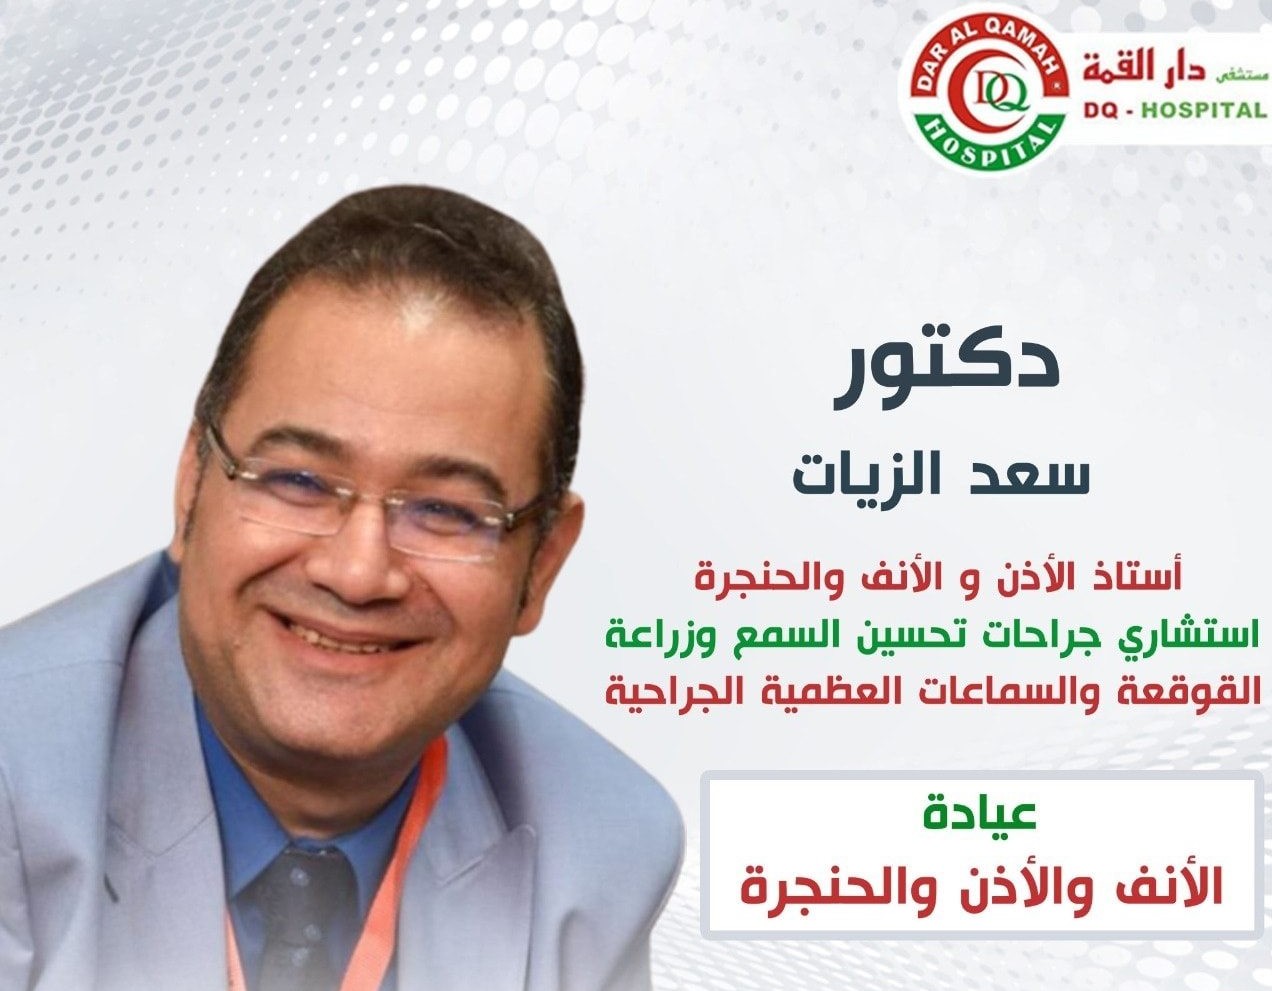 Dr. Saad Elzayat